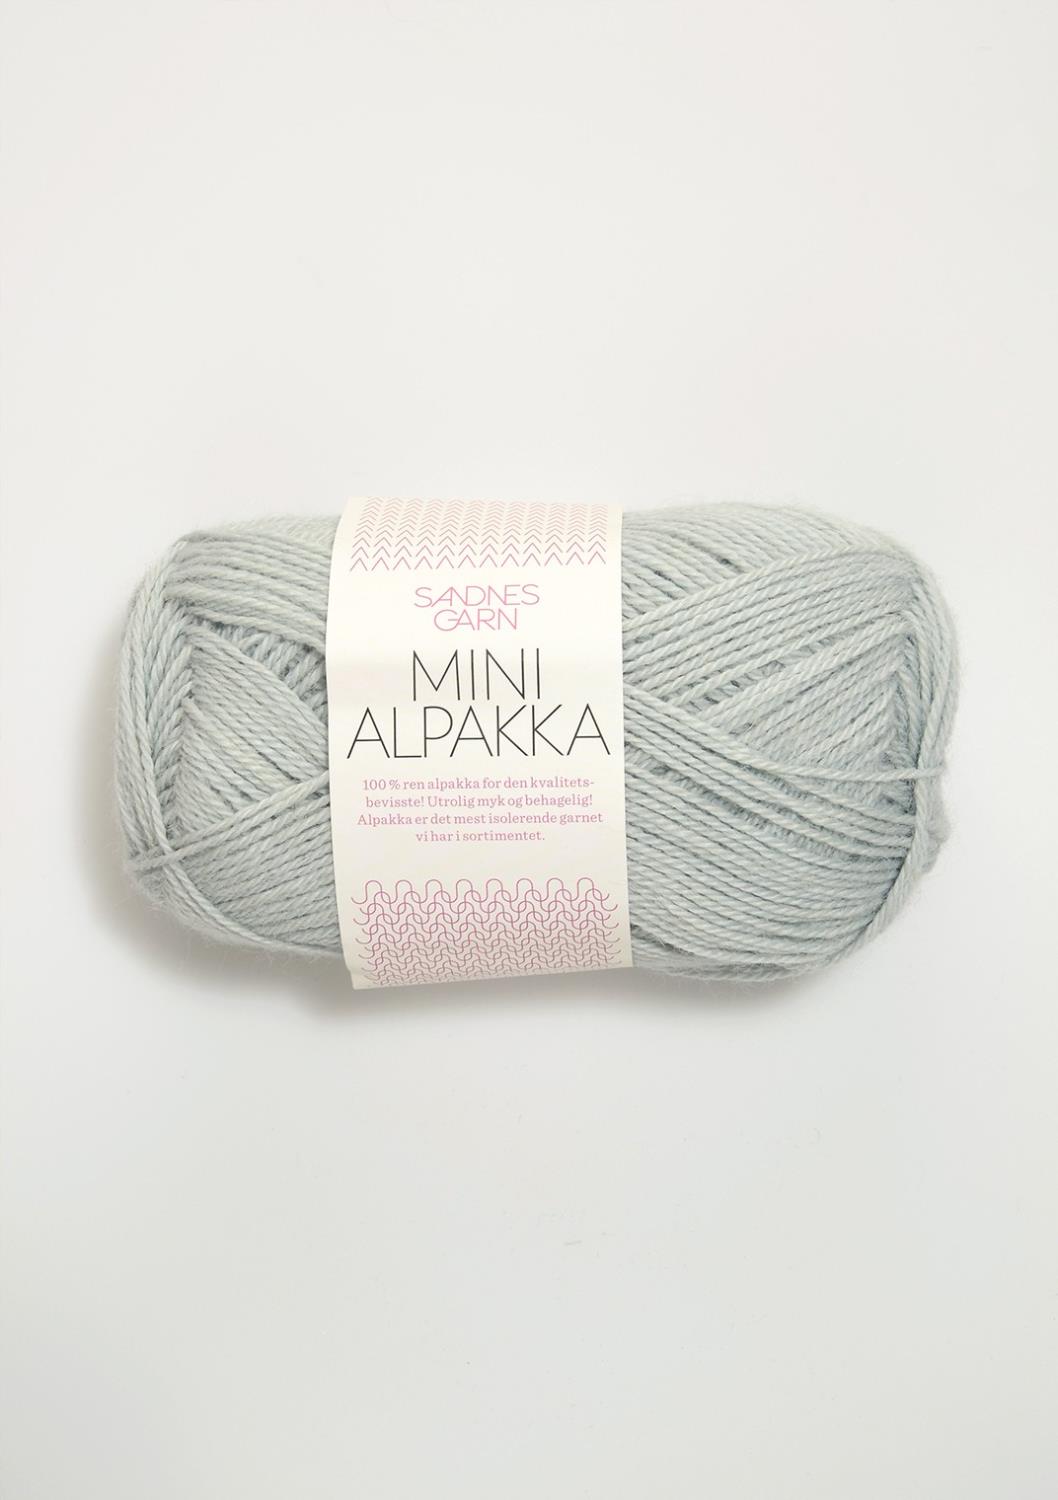 Mini Alpakka Sandnes 7521 - Støvet Lys Blå